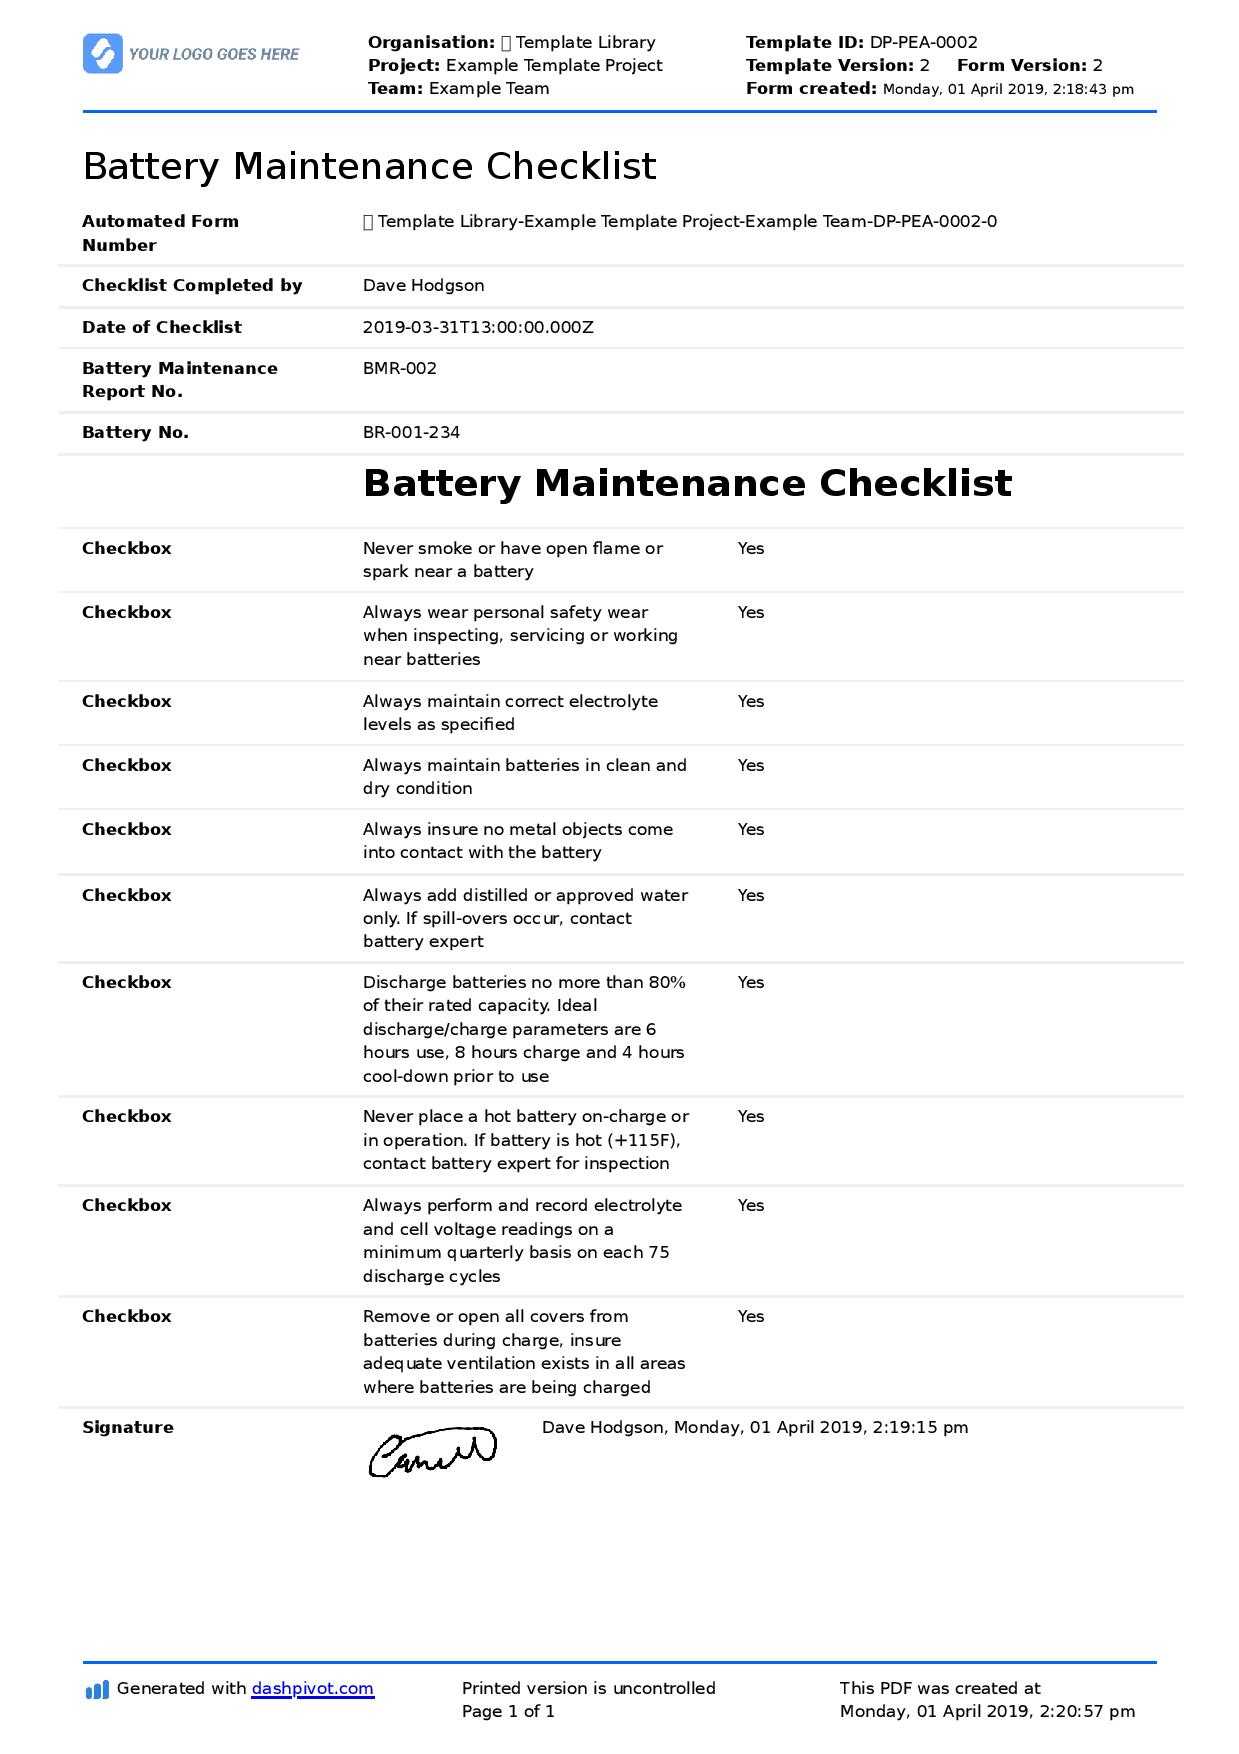 Battery Maintenance Checklist (Forklift, Industrial, Golf Regarding Computer Maintenance Report Template